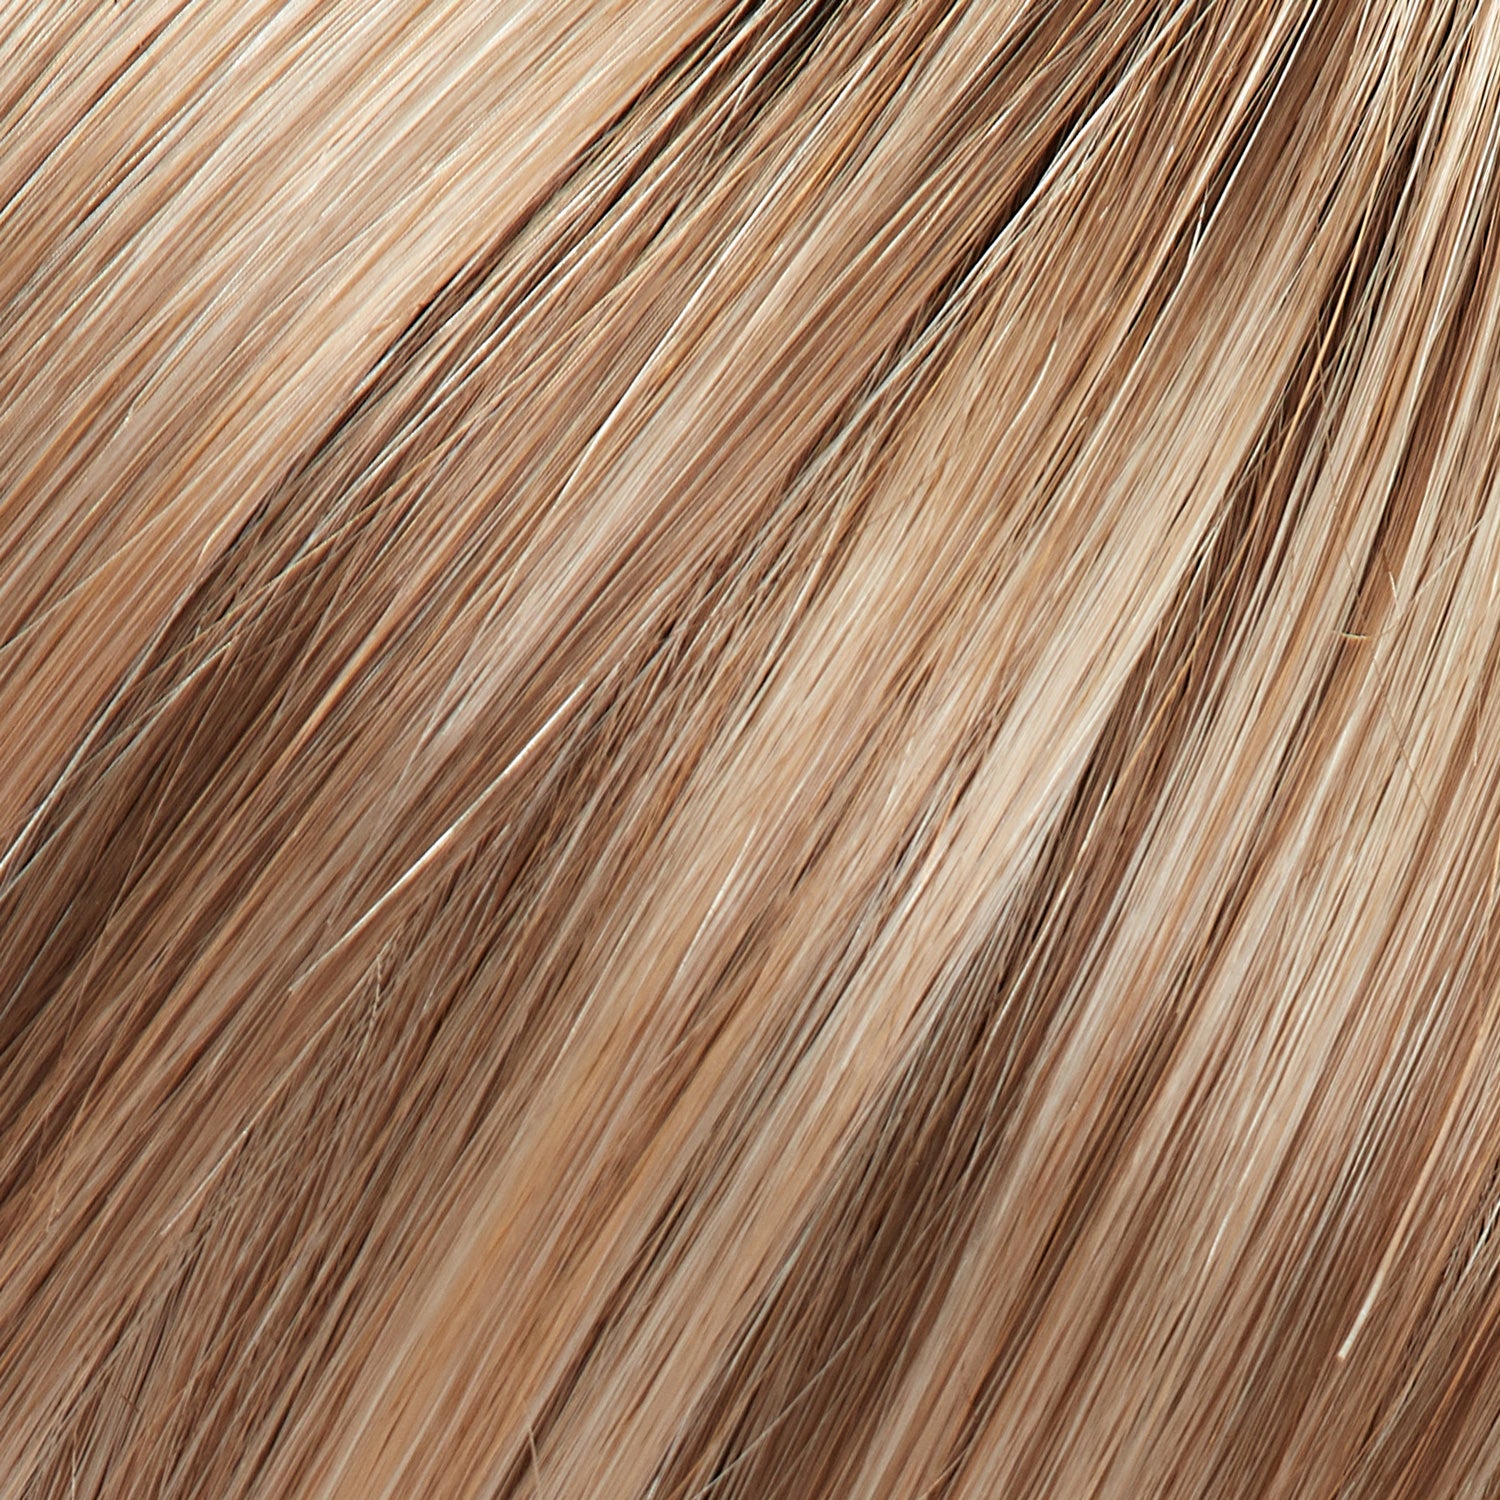 Perruque Cheveux Blonds Synthetiques Jon Renau Allure Couleur Malibu 12fs12